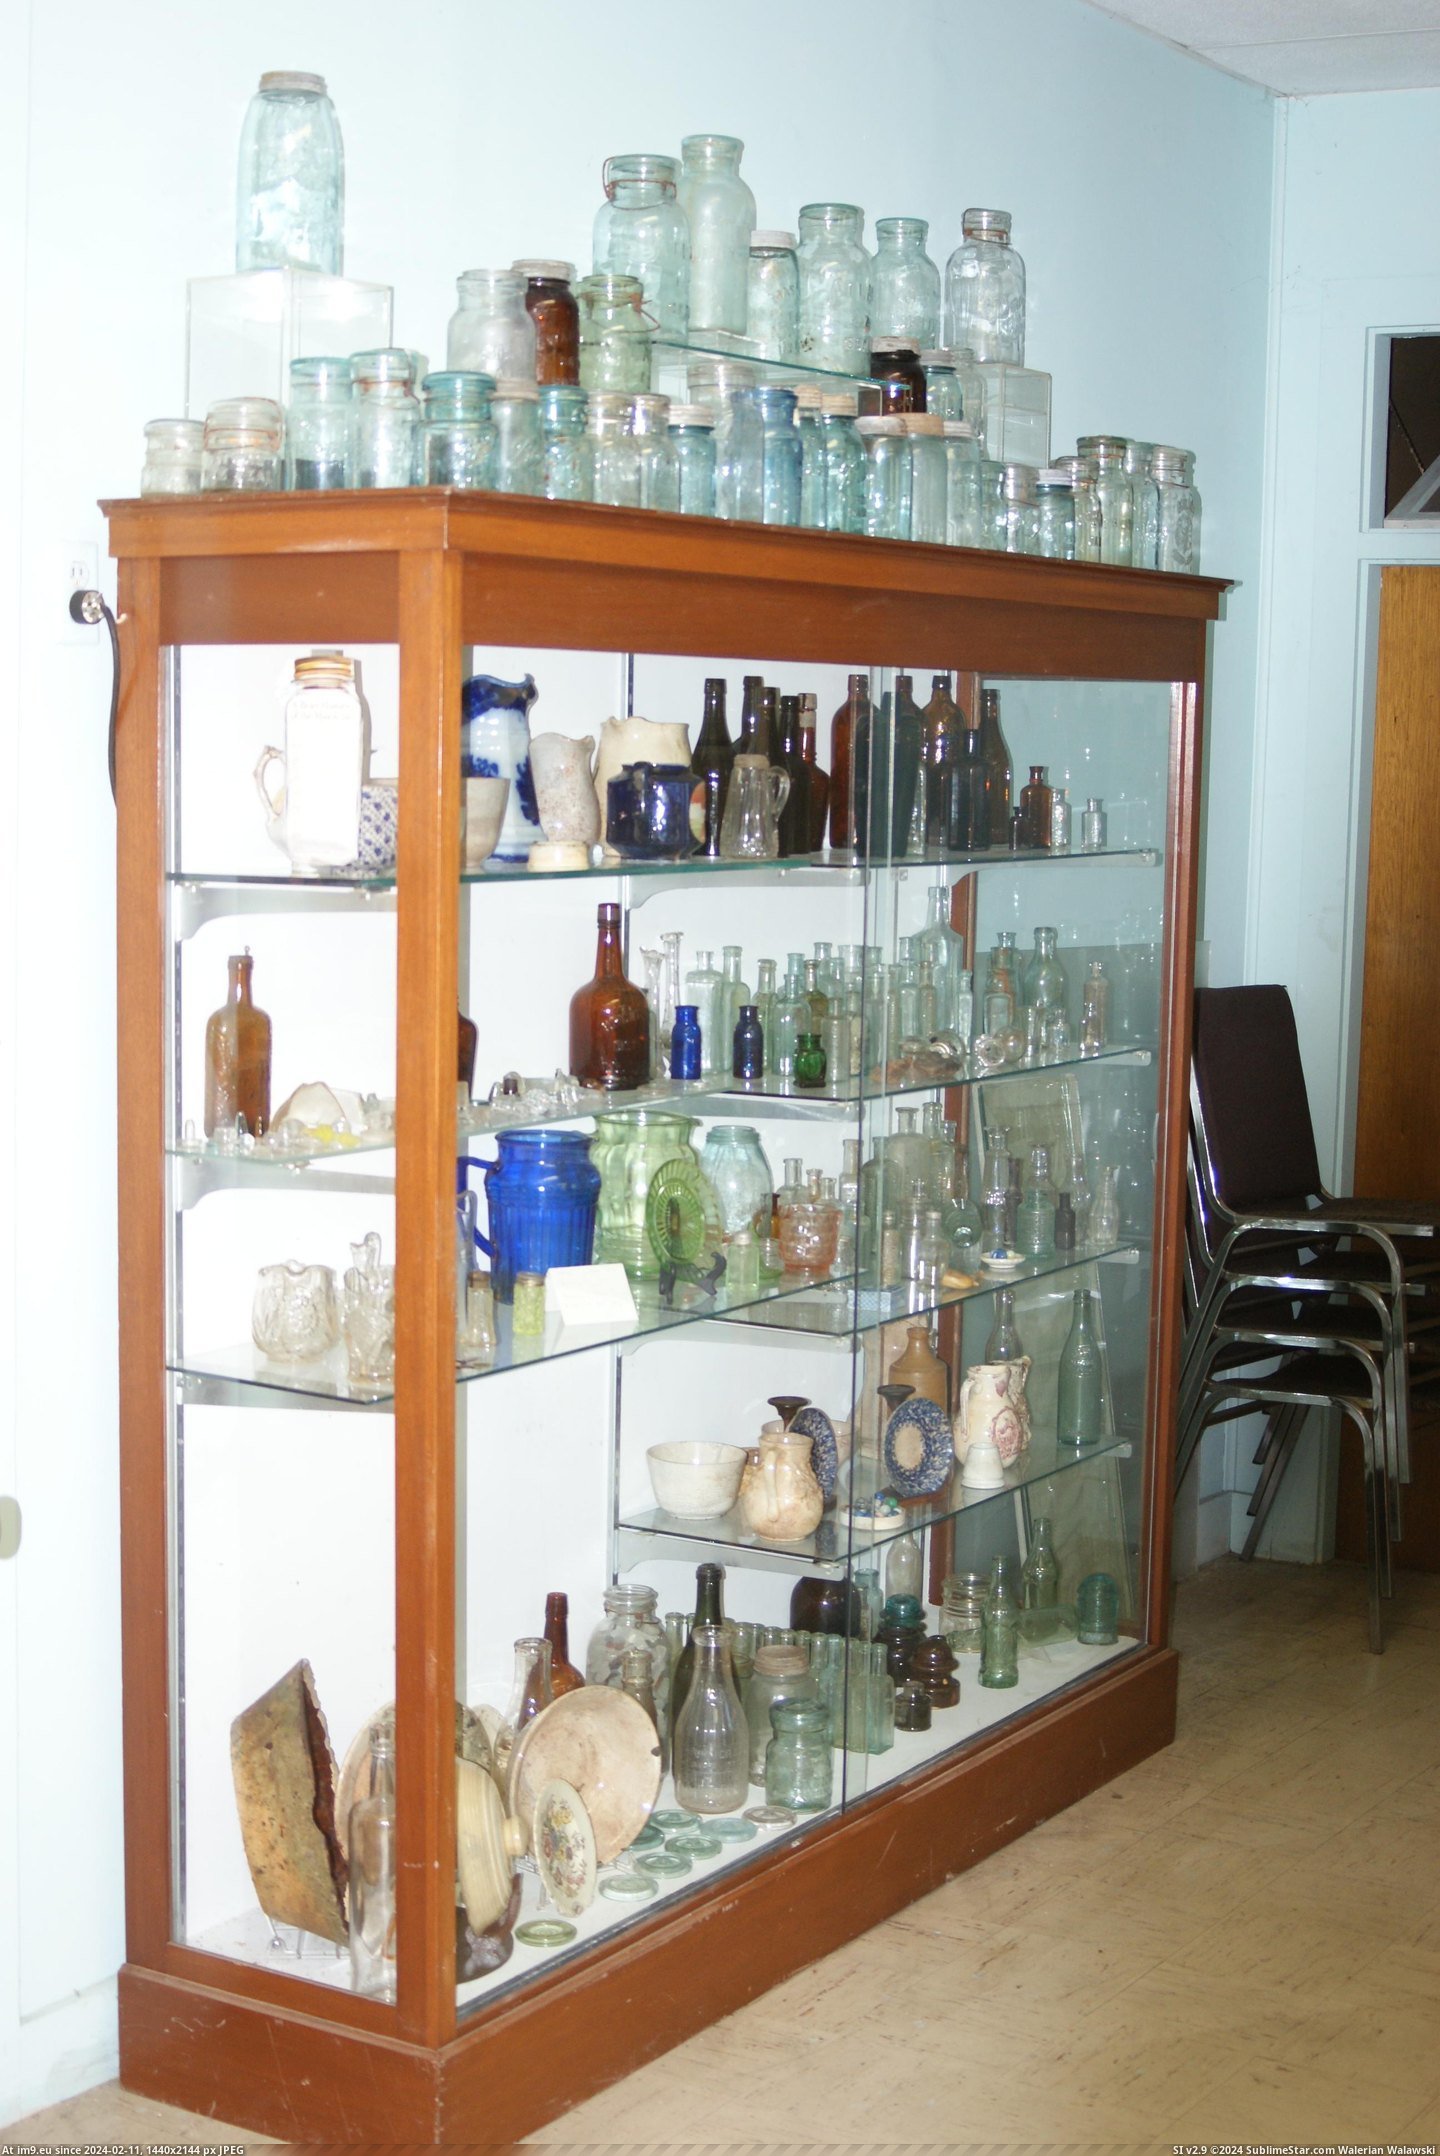 #Museum #Maine #Naples #Bottle MAINE BOTTLE MUSEUM NAPLES (1) Pic. (Image of album MAINE BOTTLE MUSEUM))